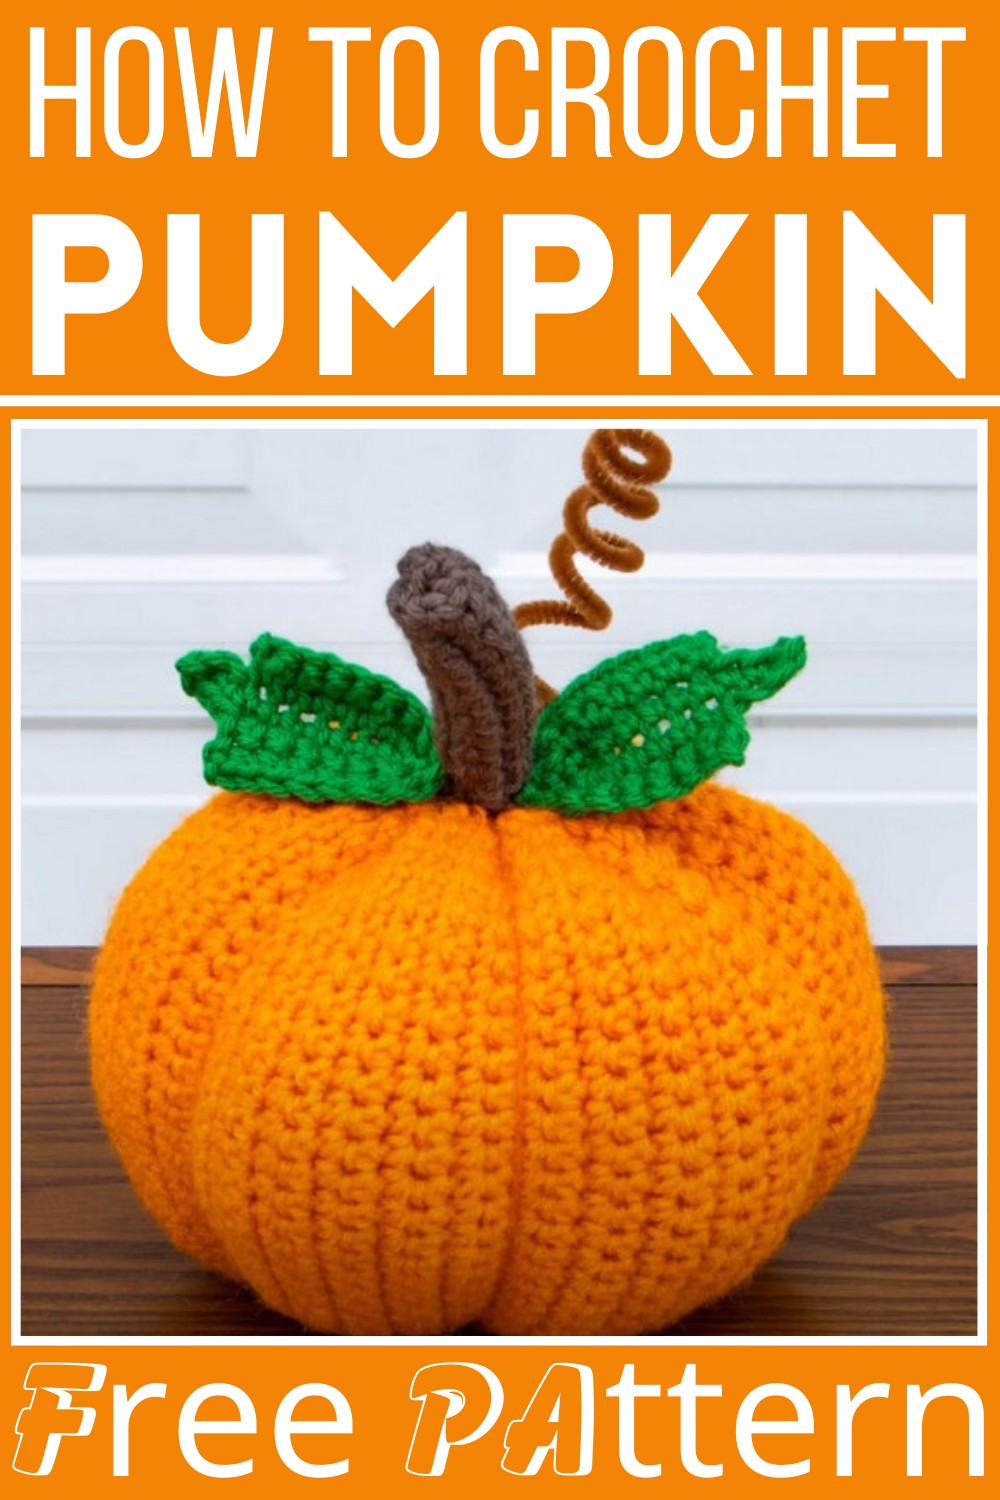 How To Crochet A Pumpkin